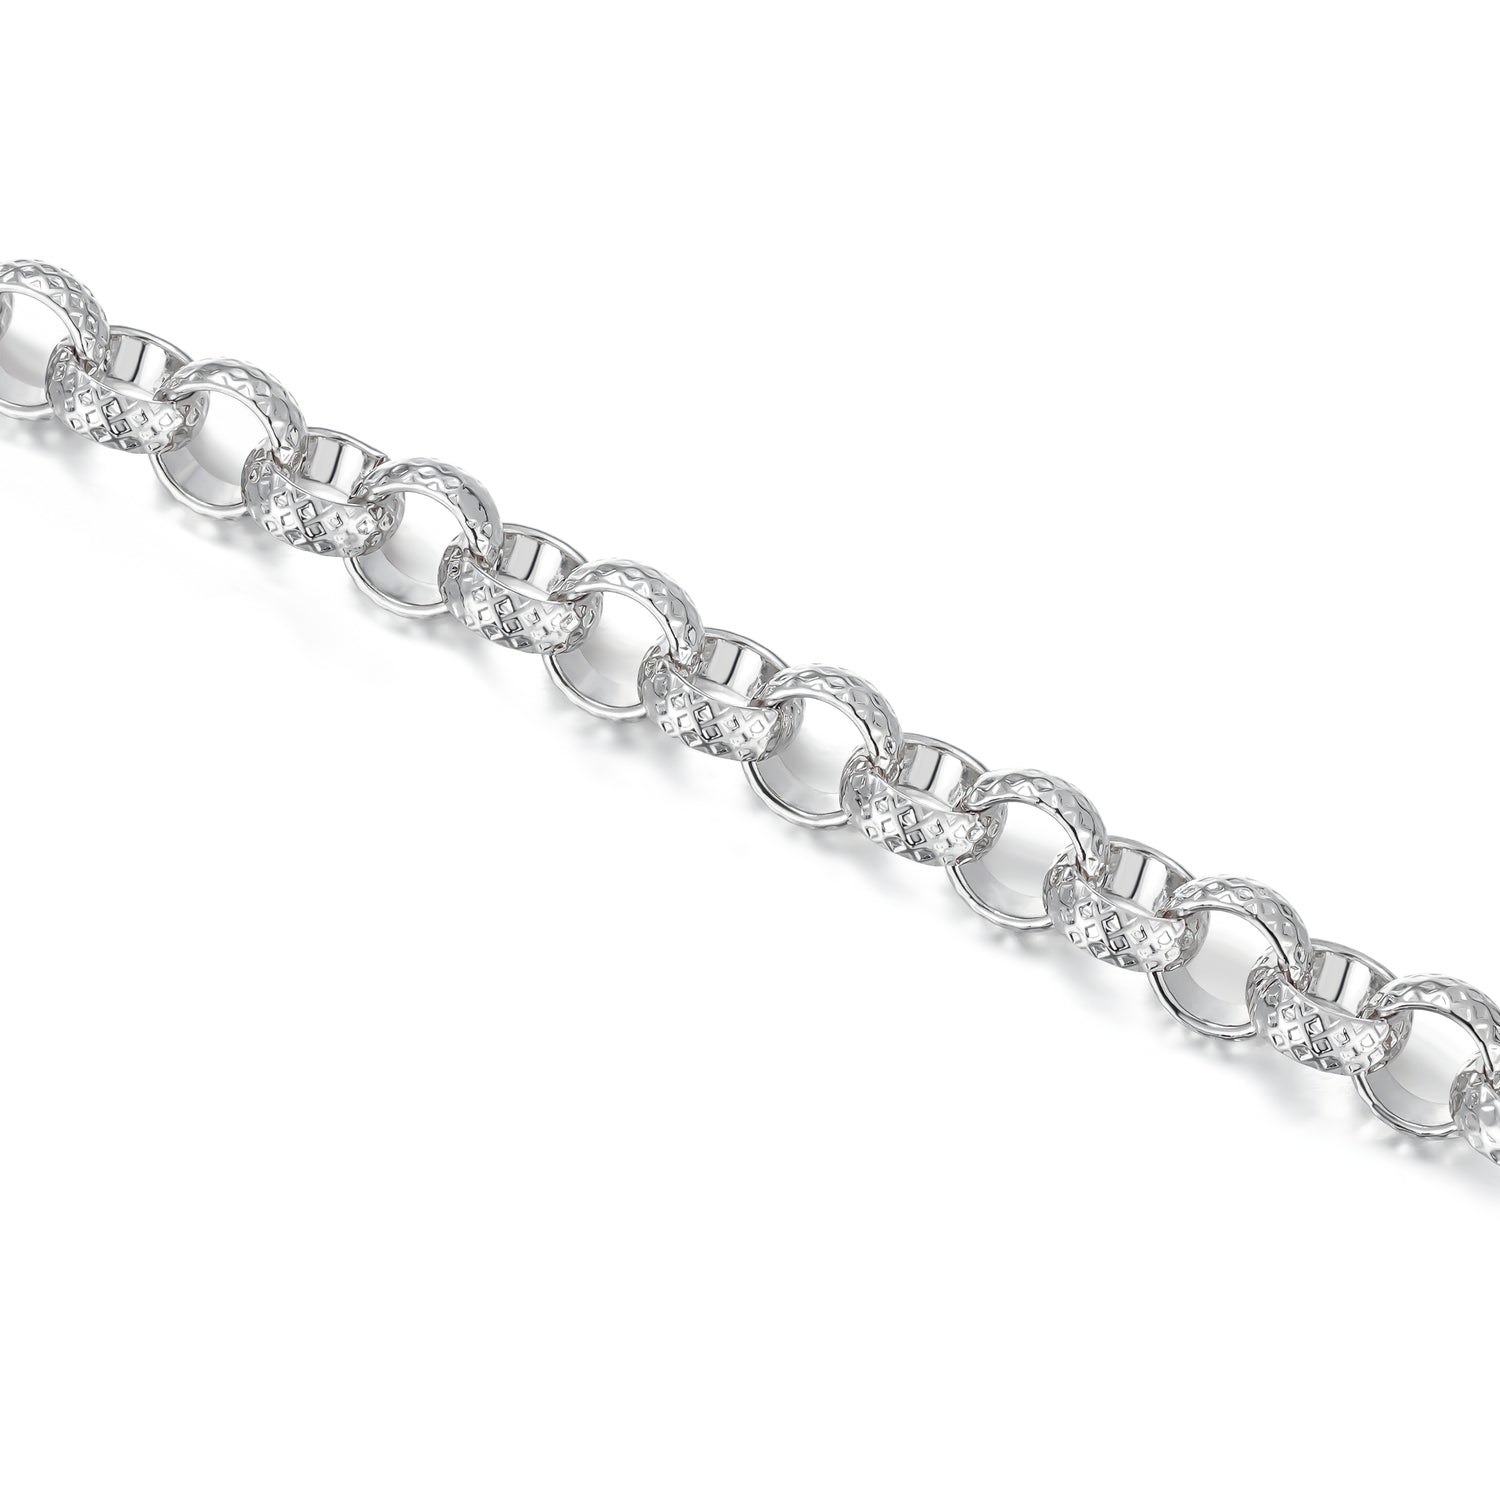 New 8mm Silver Diamond Cut Pattern Belcher Bracelet - 8 Inch